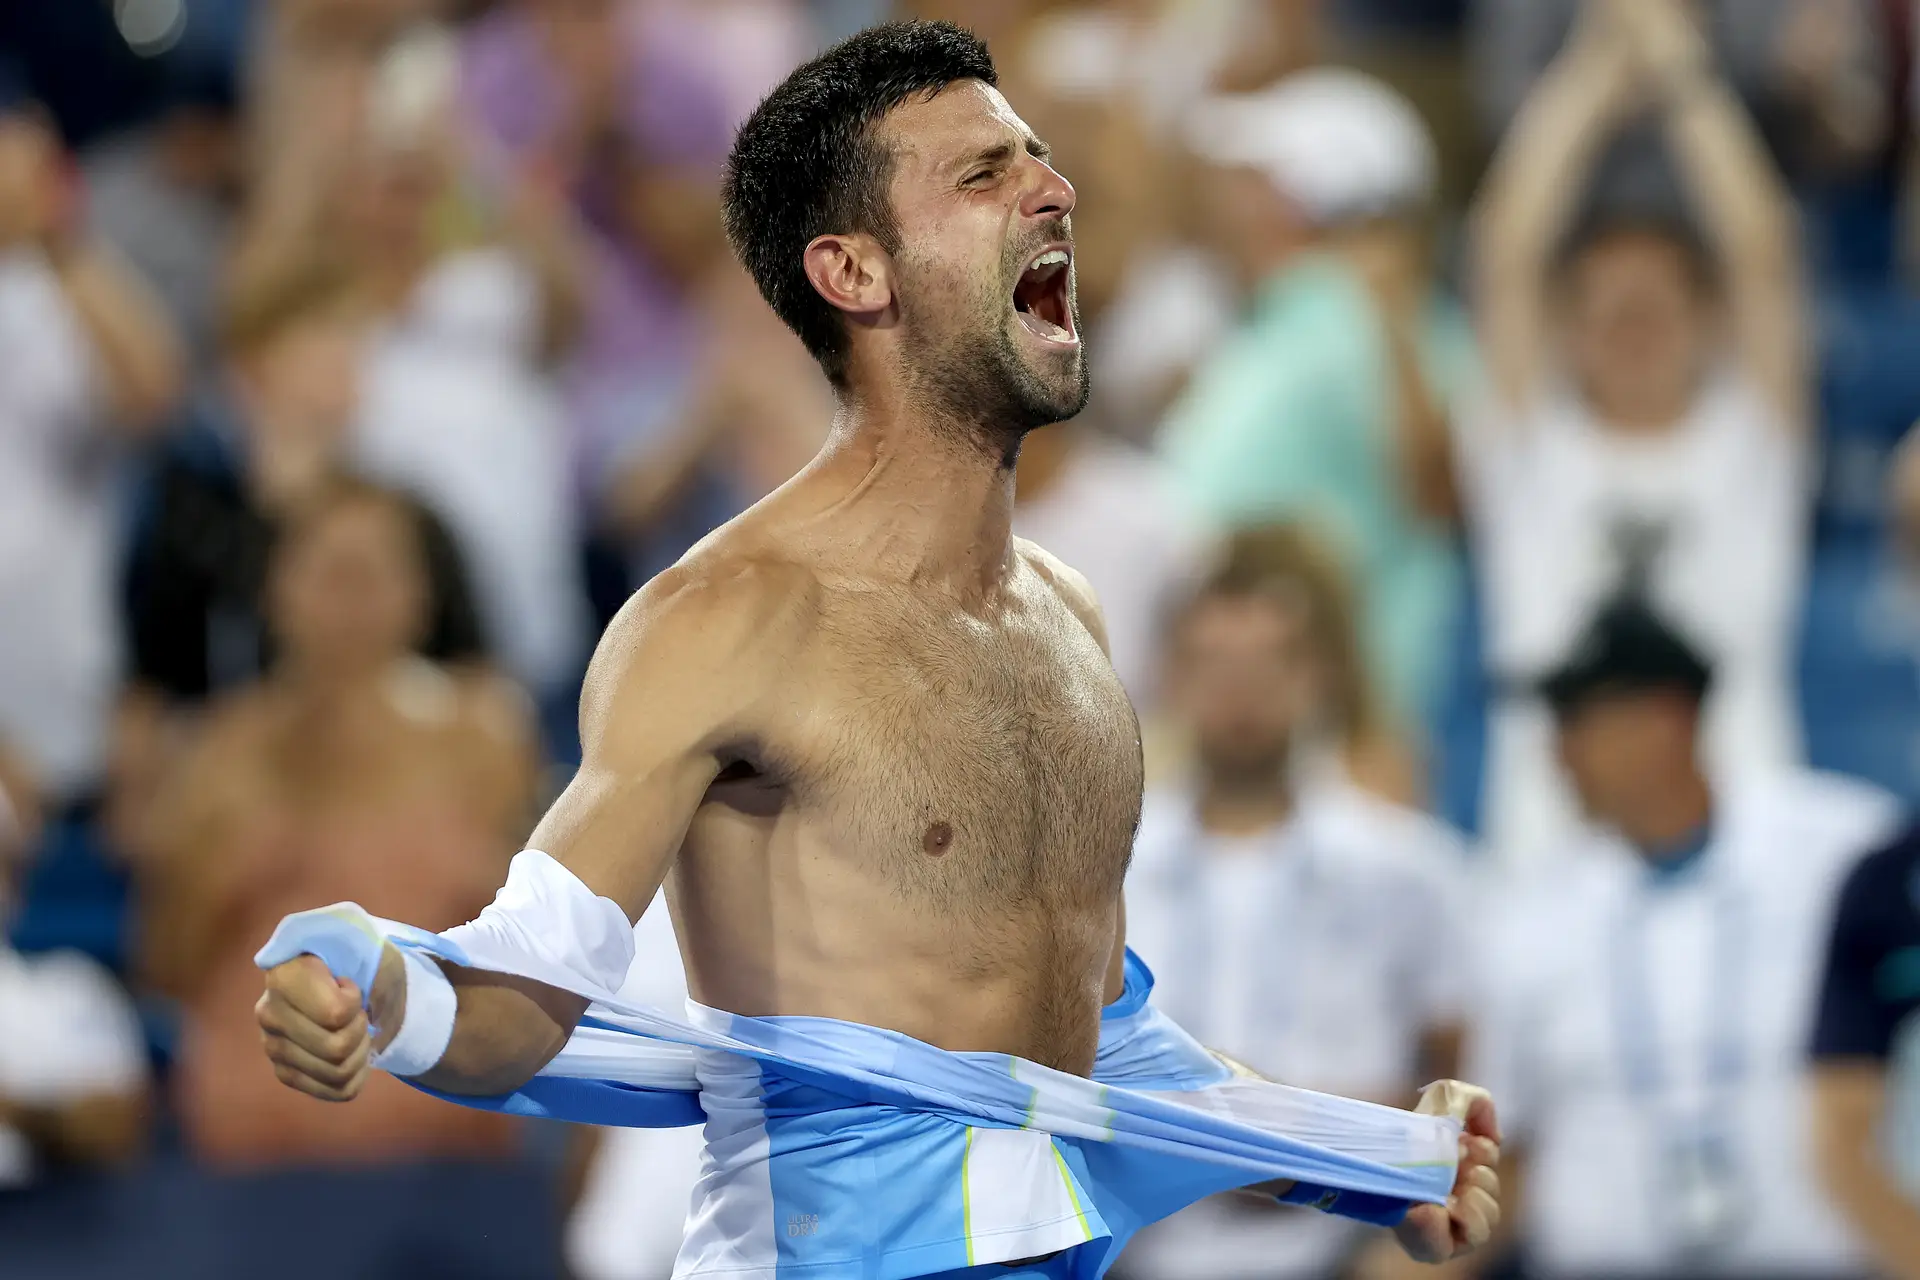 Jovem espanhol destrona Djokovic e faz história em Wimbledon